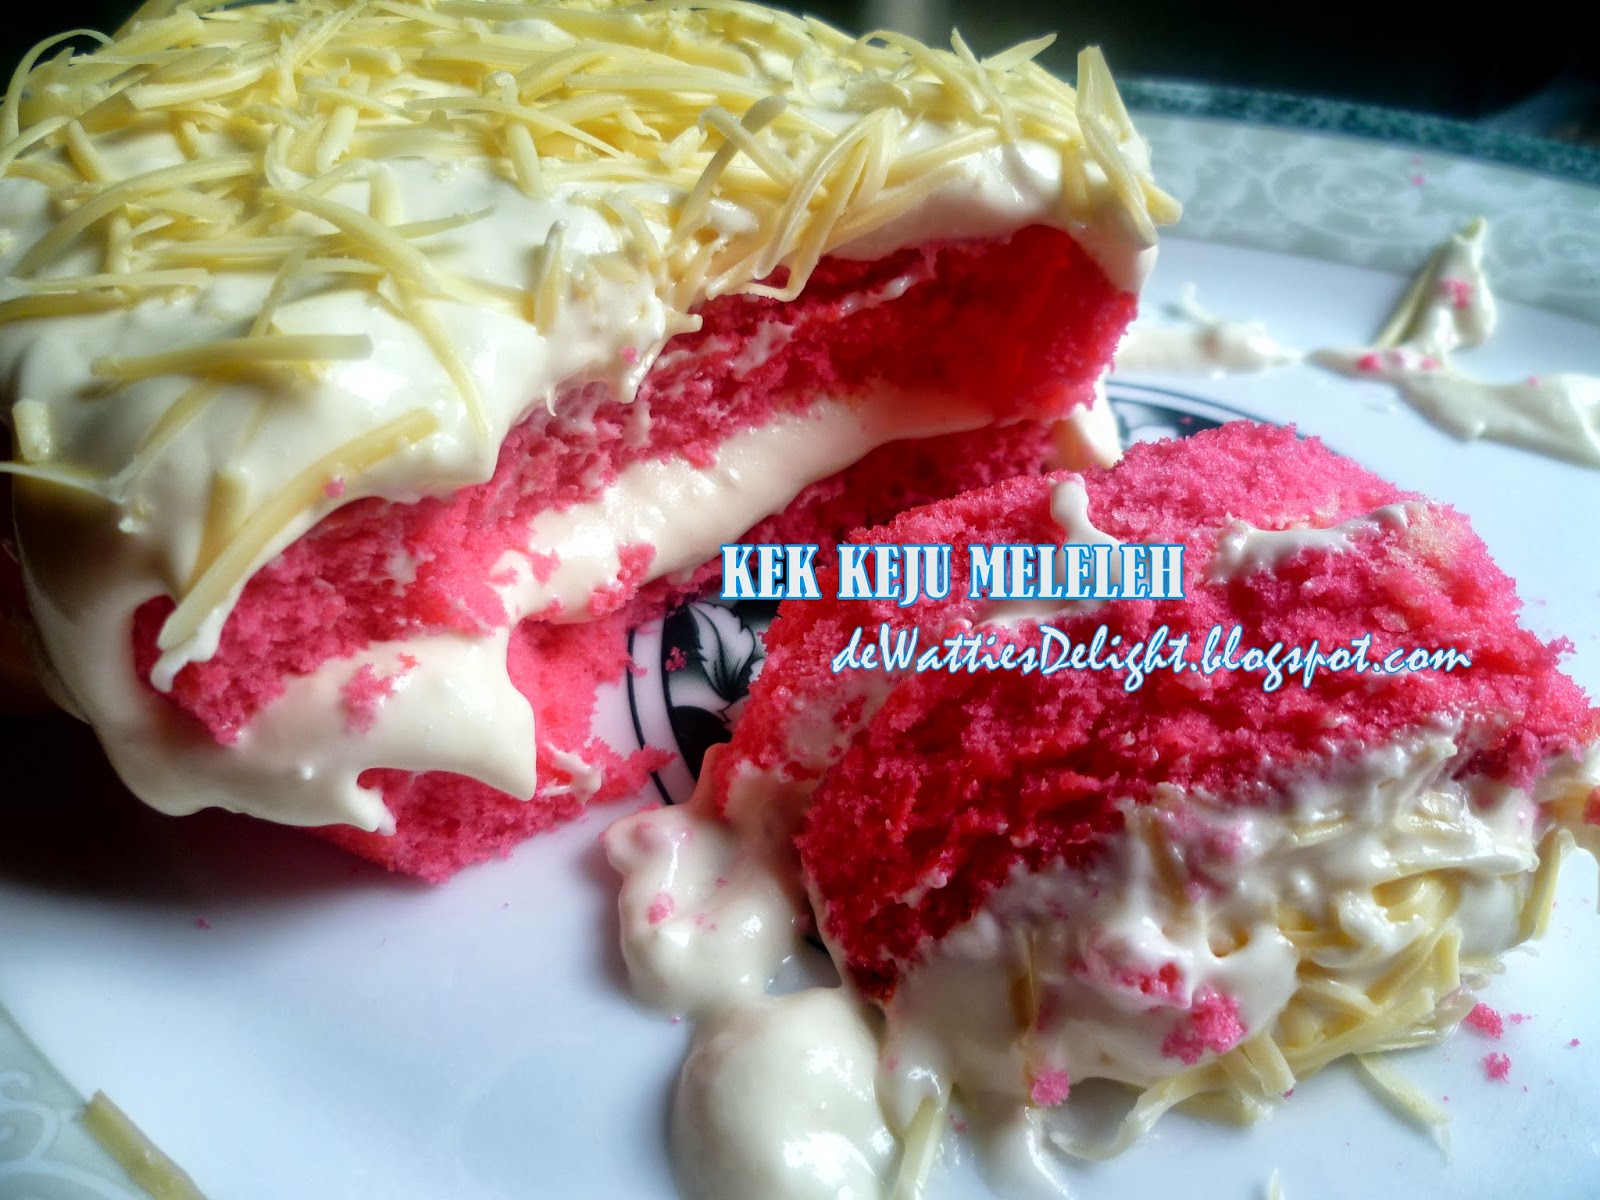 De Watties Delight: Kek Cheese Meleleh / Kek Keju Meleleh 